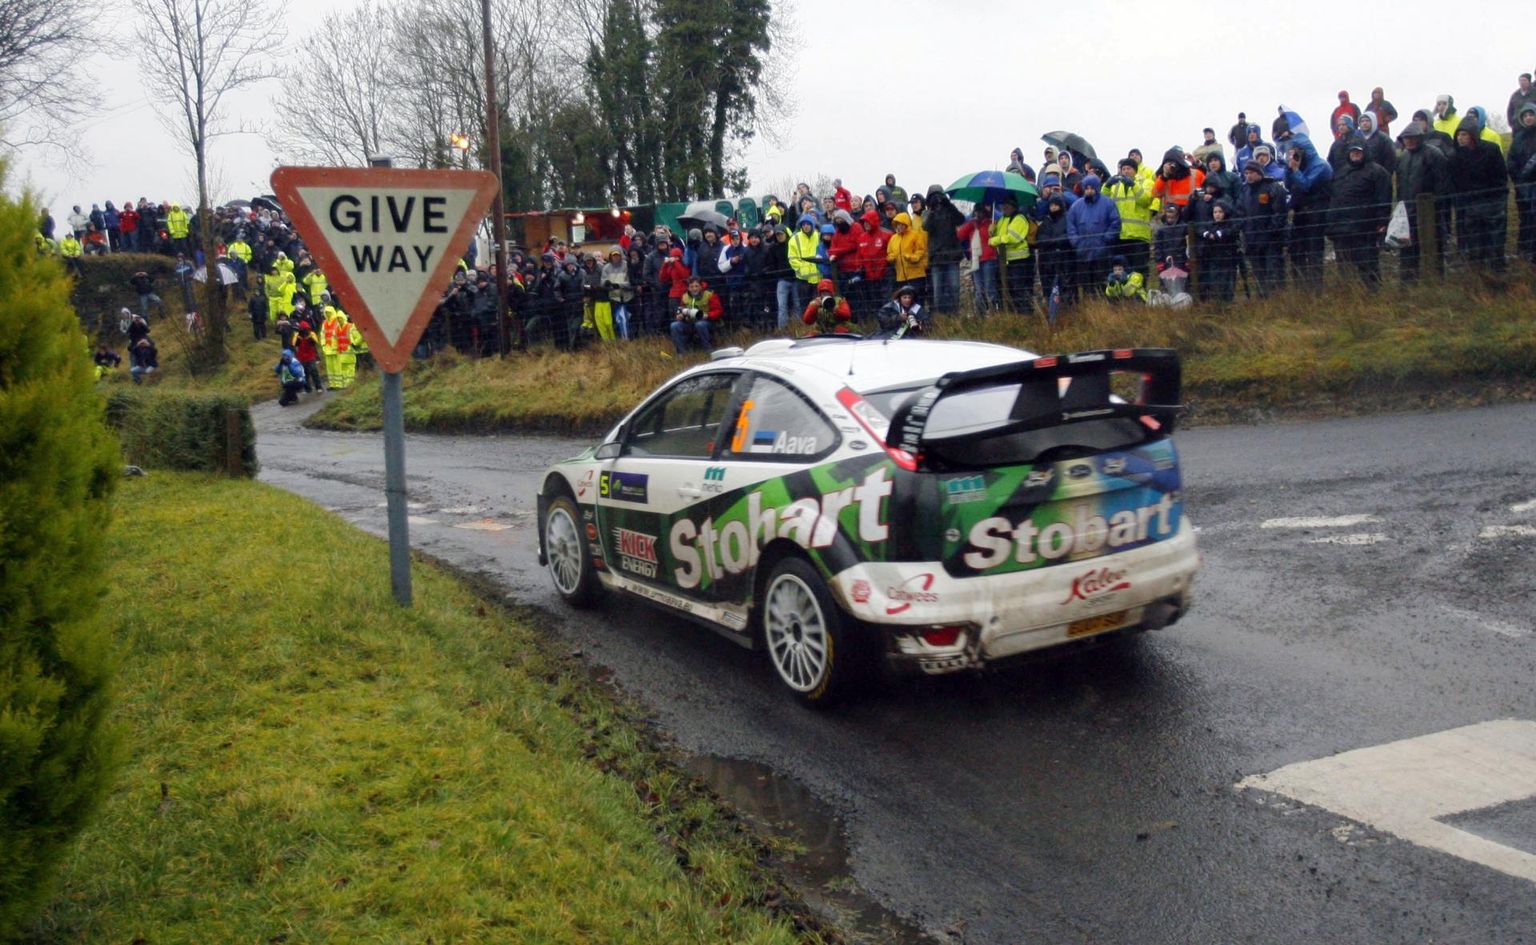 11 aastat tagasi tõusis Urmo Aava muutlikes oludes toimunud Iirimaa rallil karjääris esimest korda MM-ralli liidriks. 2009. aasta hooaeg jäi praegusele Rally Estonia pealikule sõitjana tipptasemel viimaseks.